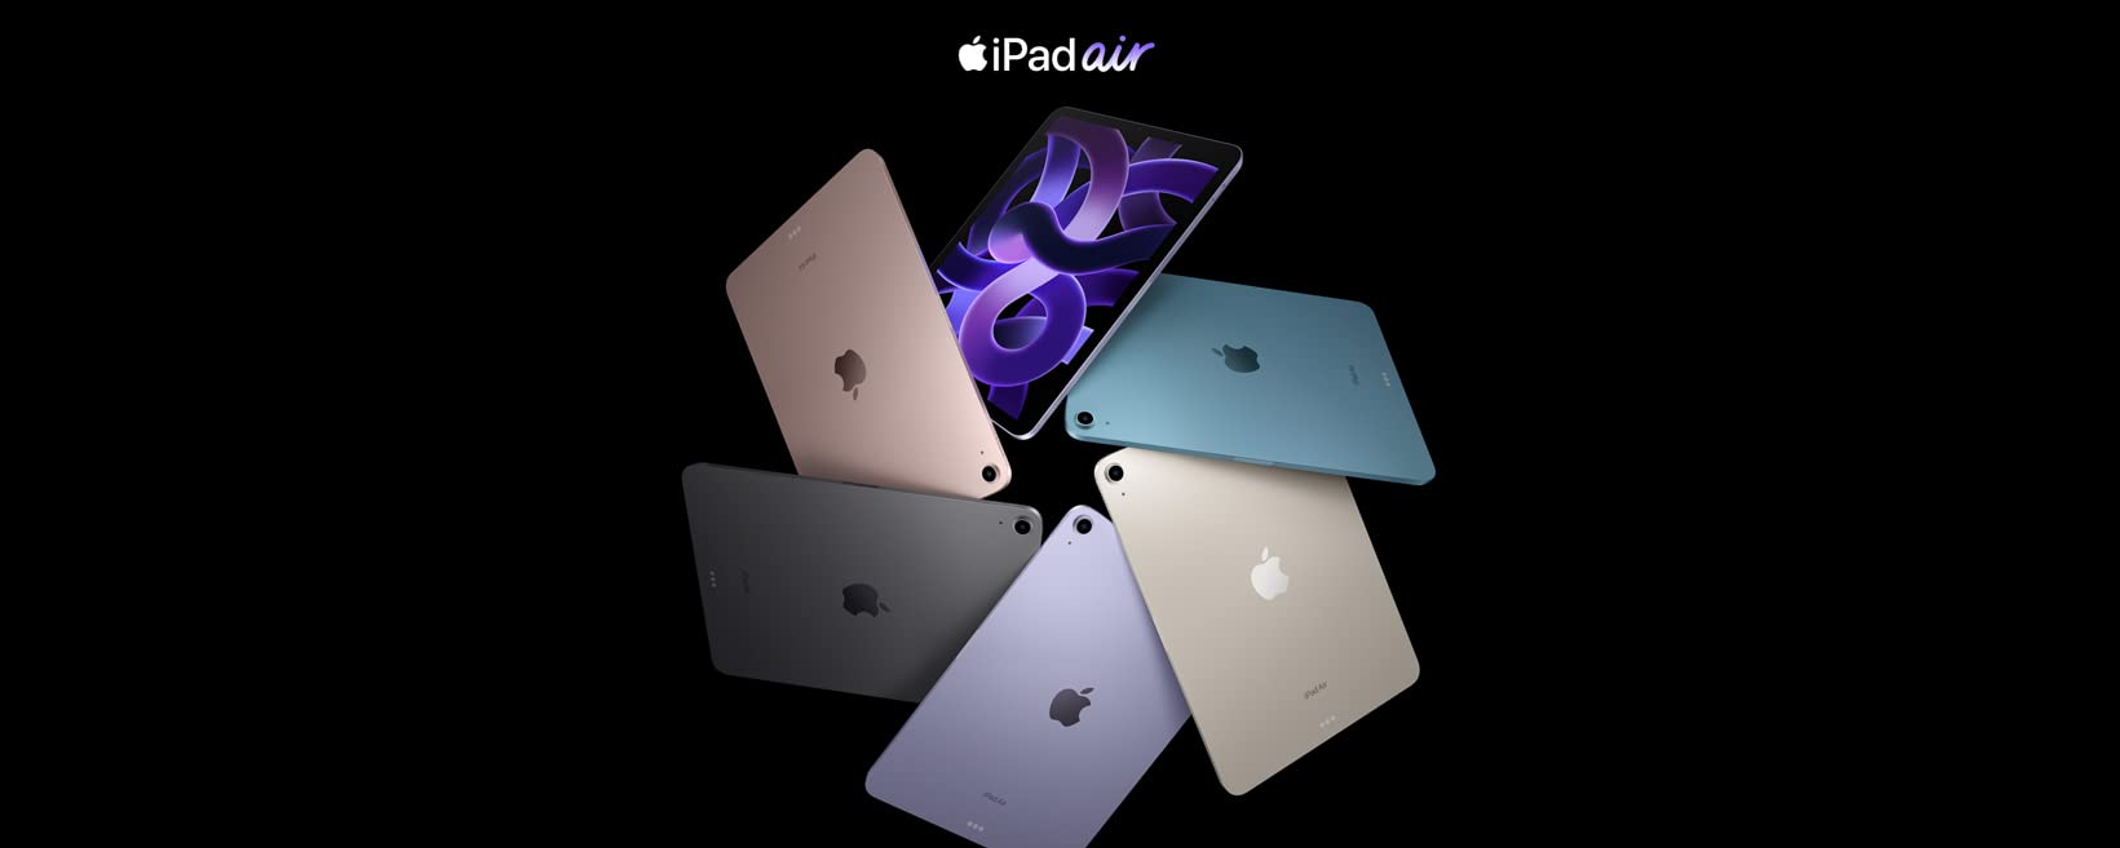 iPad Air è un acquisto OBBLIGATORIO con lo SCONTO di 200€